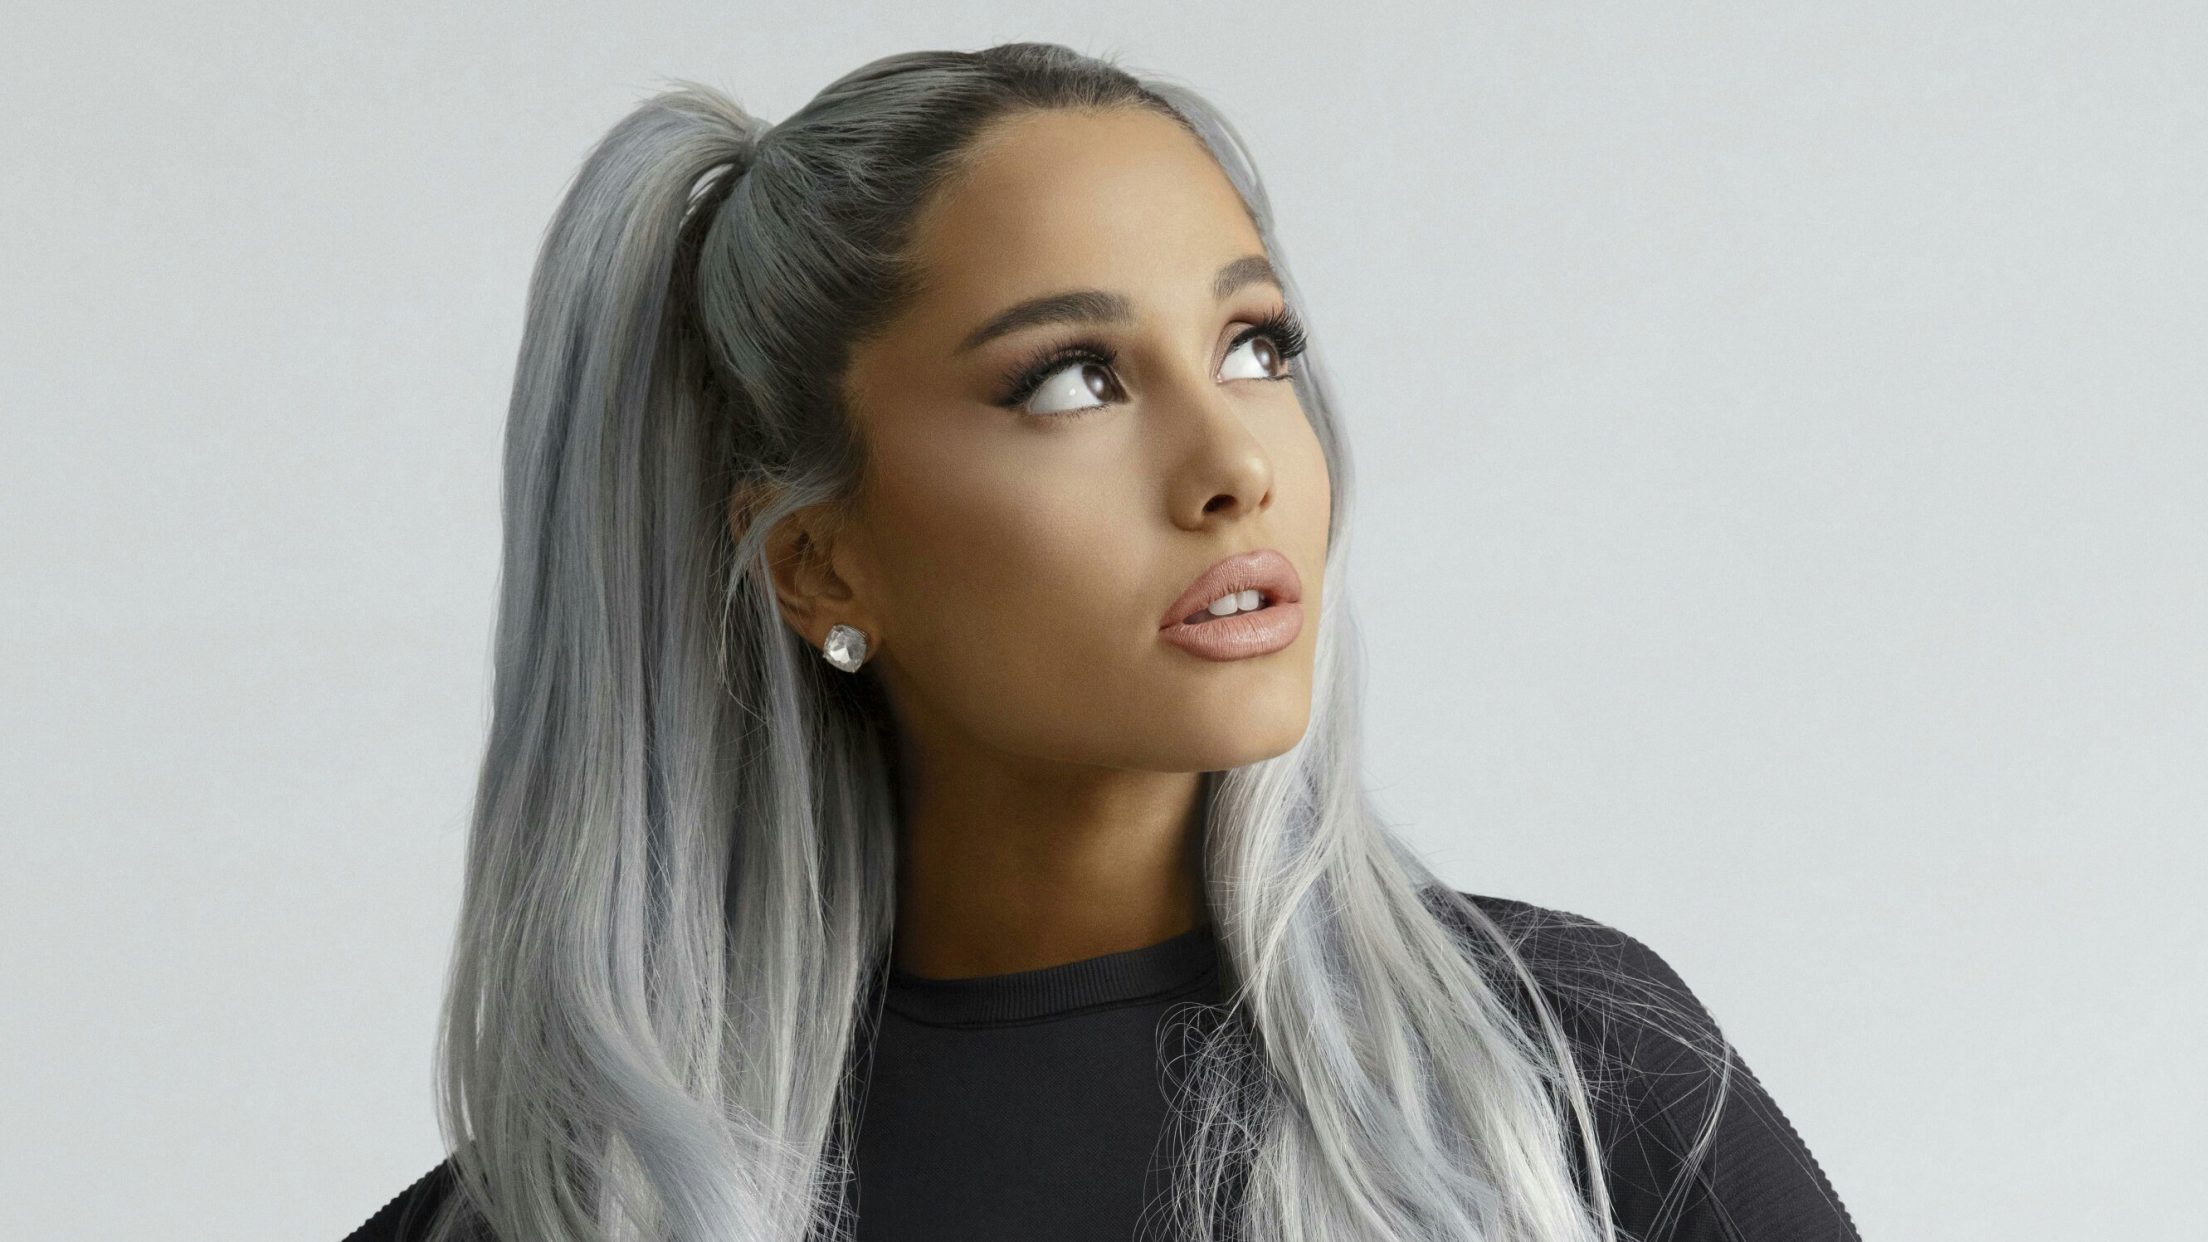 Silver Hair Ariana Grande - HD Wallpaper 